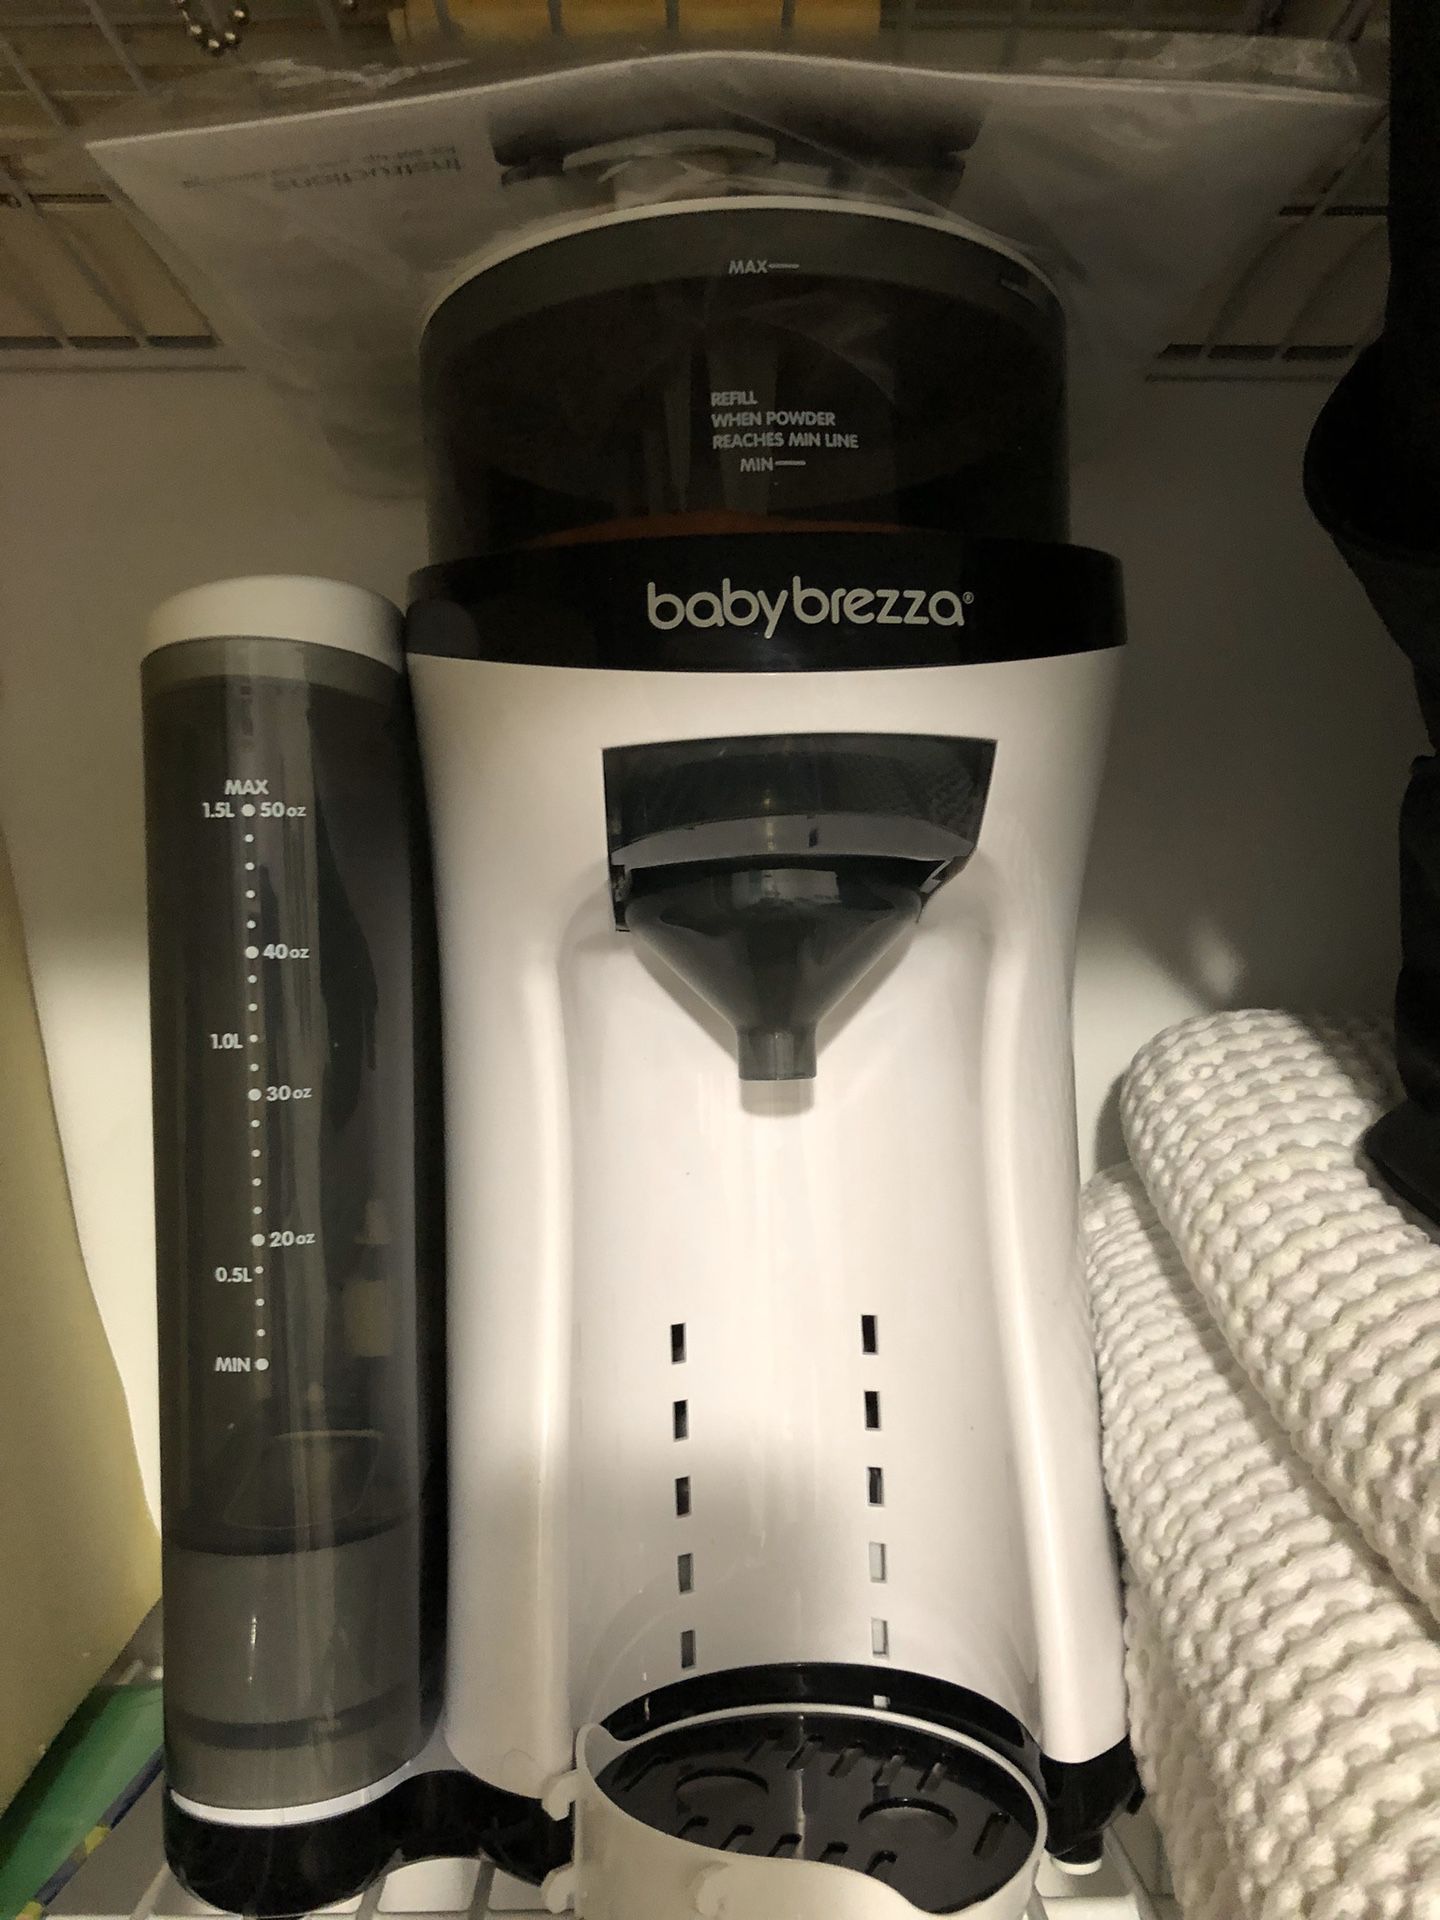 Baby Brezza Formula Pro Advanced Formula Dispenser